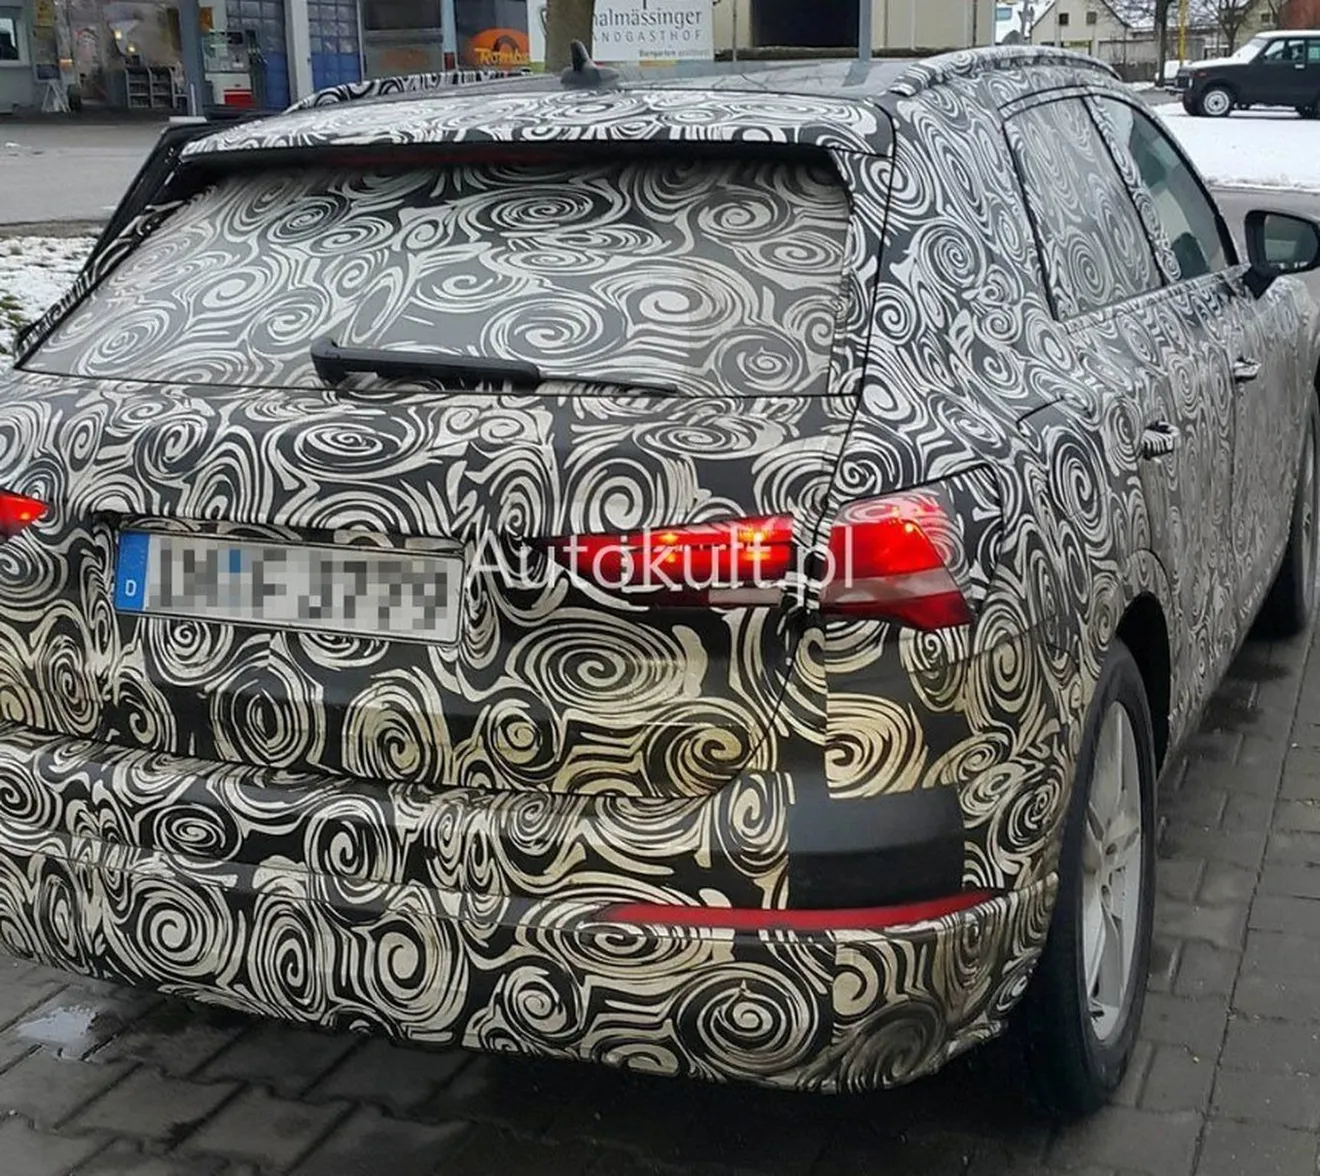 Nuevas fotos espía más reveladoras desvelan el avanzado interior del nuevo Audi Q3